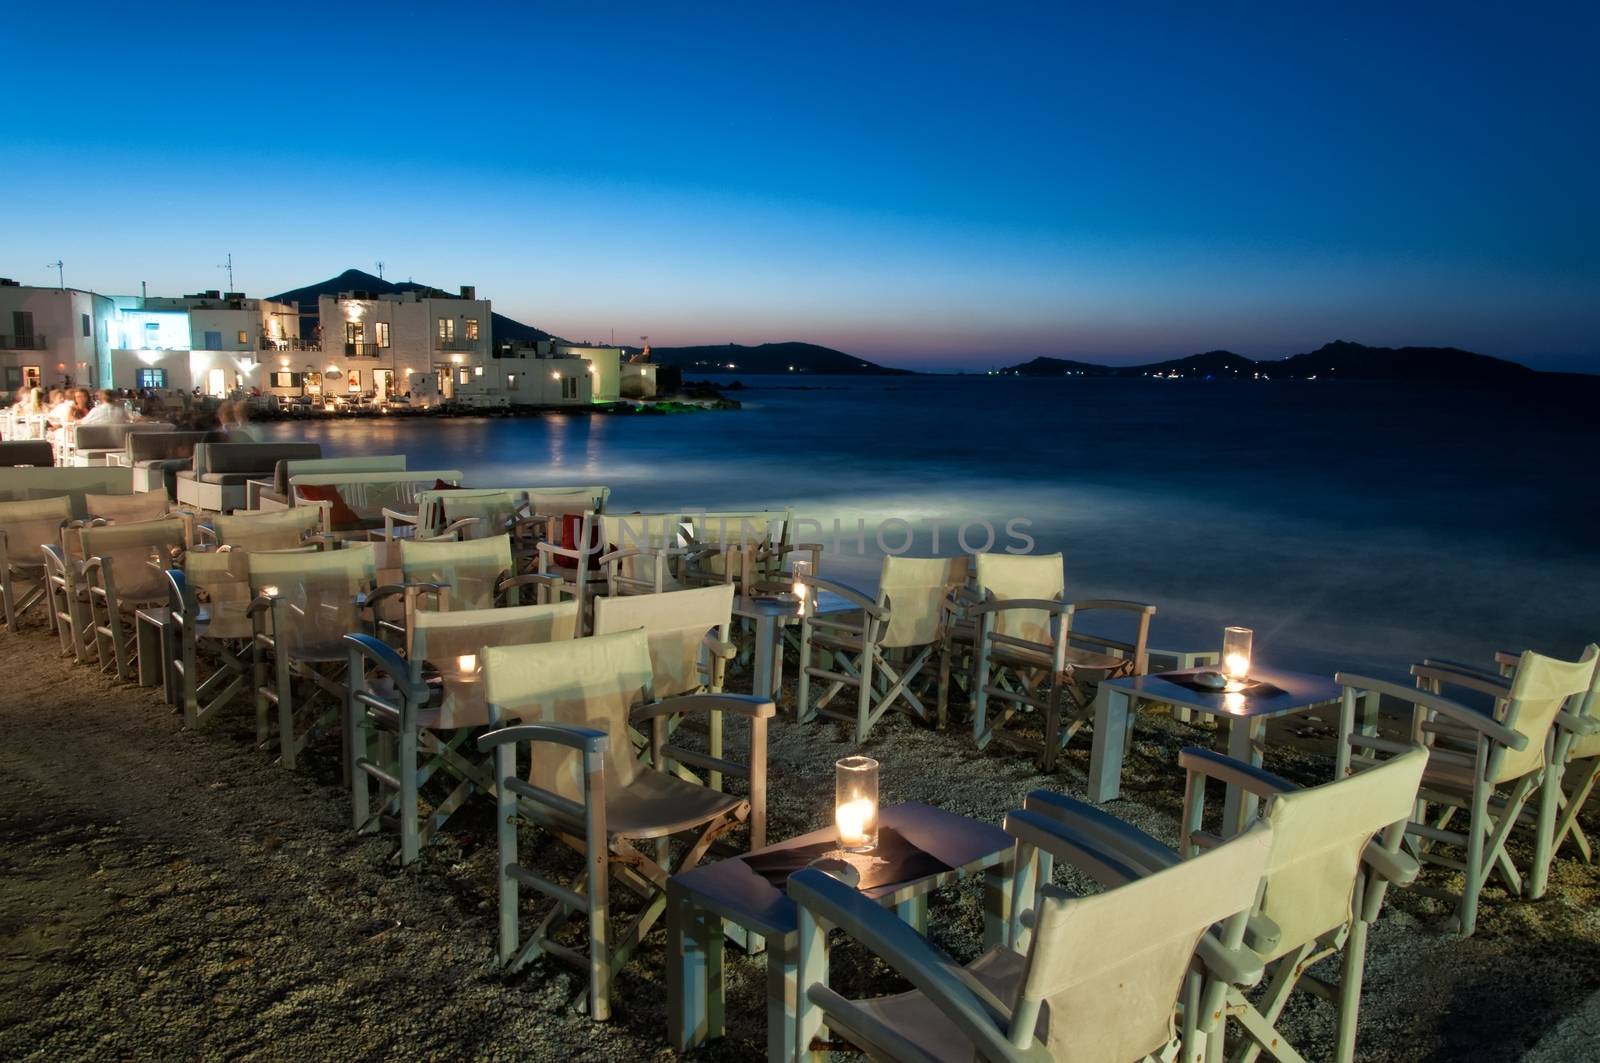 Cozy restaurant at night in Naussa, Paros by mitakag